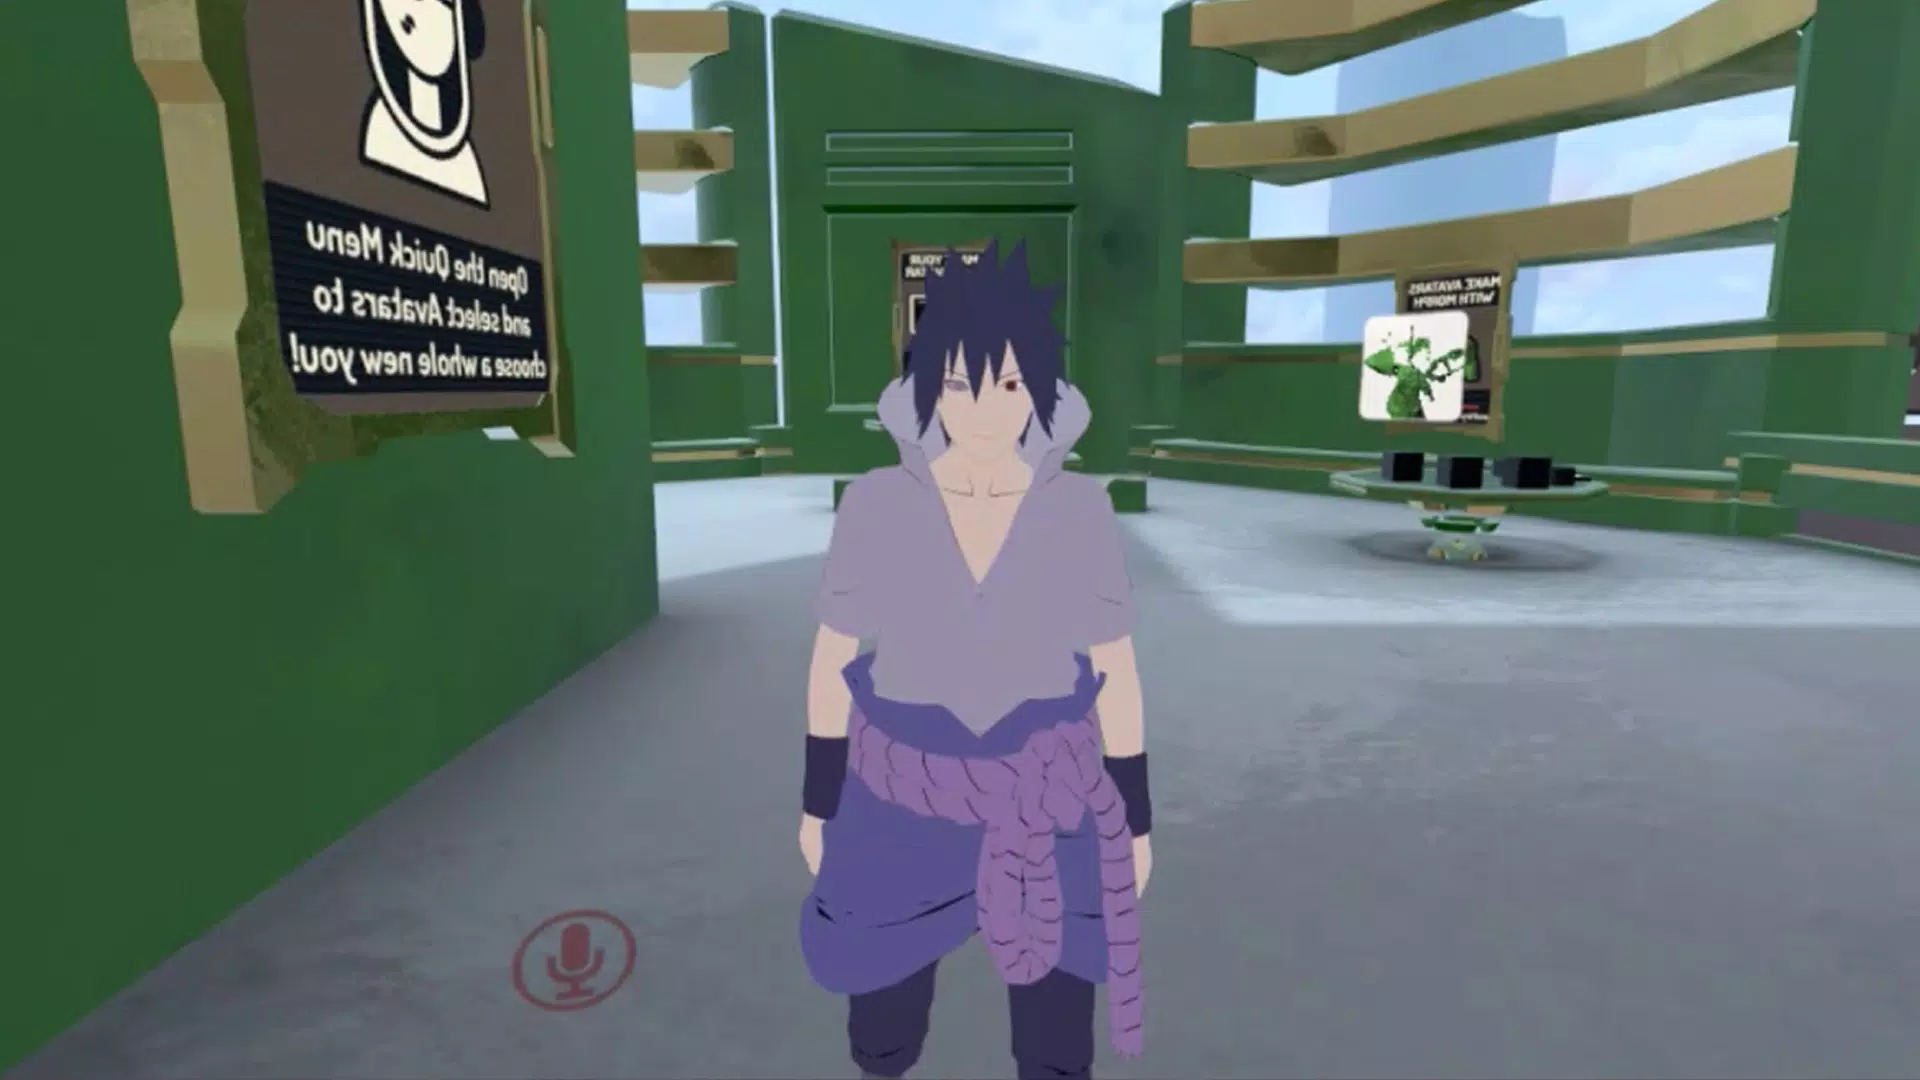 Tải xuống game VR Chat Avatars cho Naruto trên Android:
Bạn là fan hâm mộ của Naruto và muốn tìm kiếm những Avatar liên quan đến Naruto trên VRChat? Bạn đang tìm kiếm một game VR Chat Avatars hoàn toàn mới cho Naruto? Vậy tại sao không tải xuống game VR Chat Avatars cho Naruto trên Android của chúng tôi để có những trải nghiệm mới này?